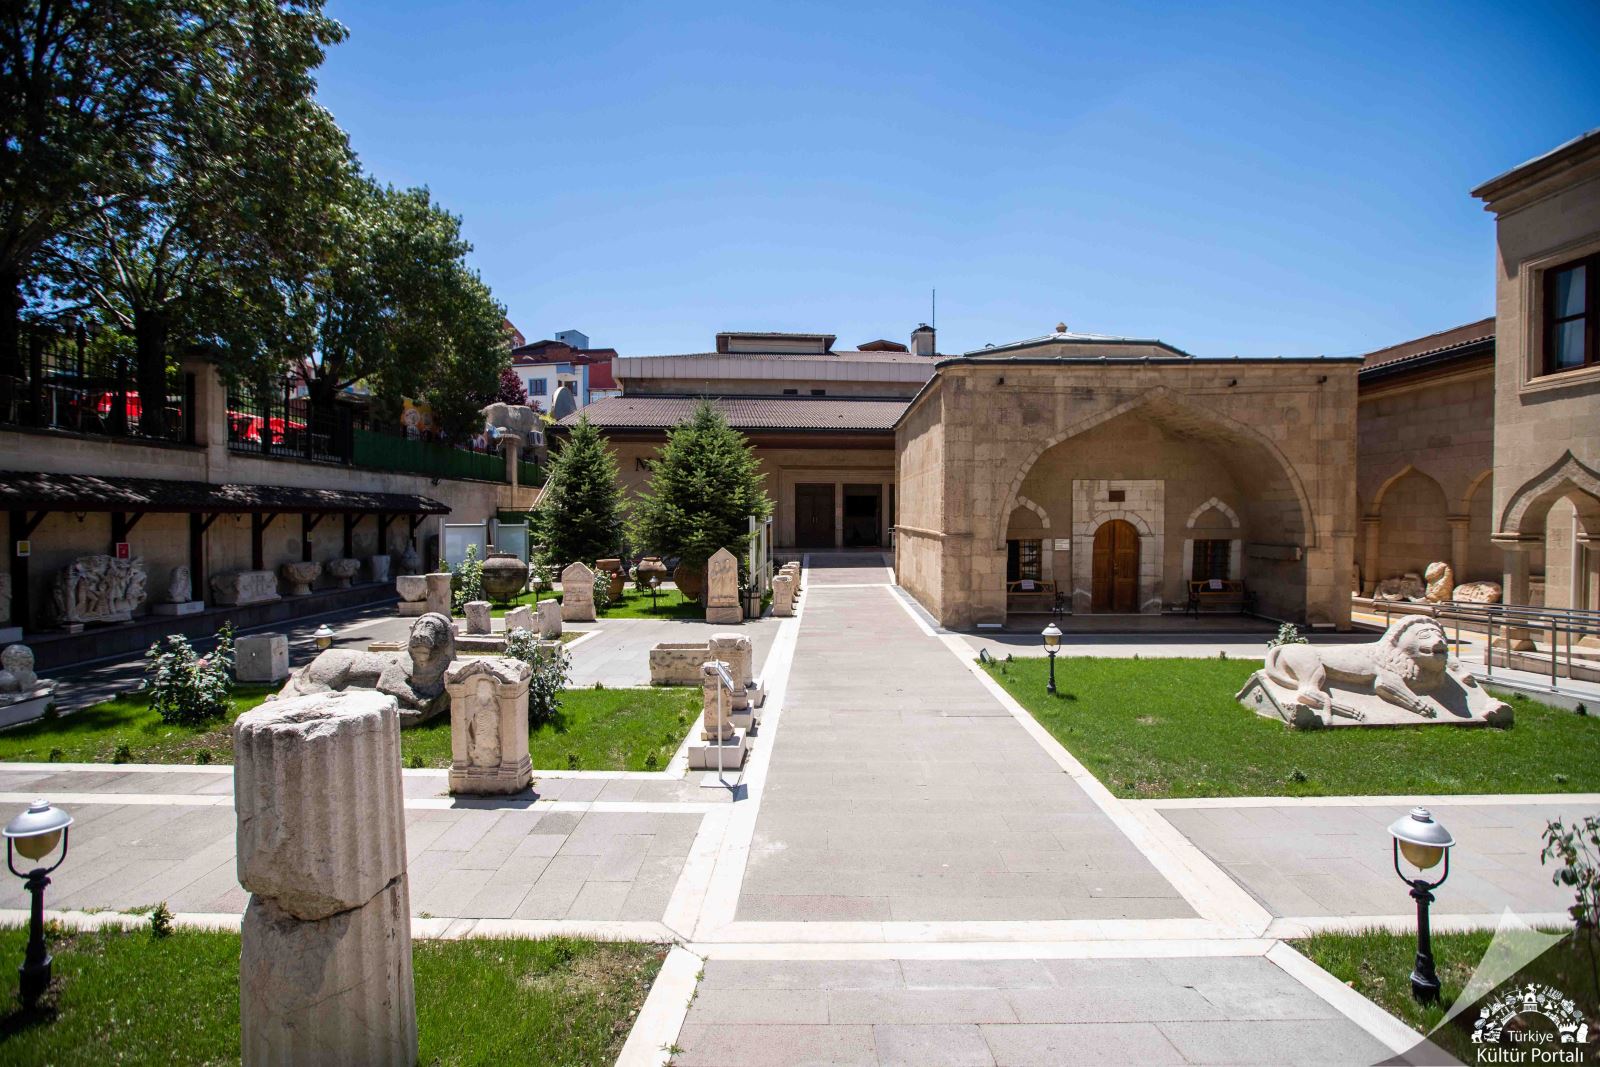 Burdur Arkeoloji Müzesi